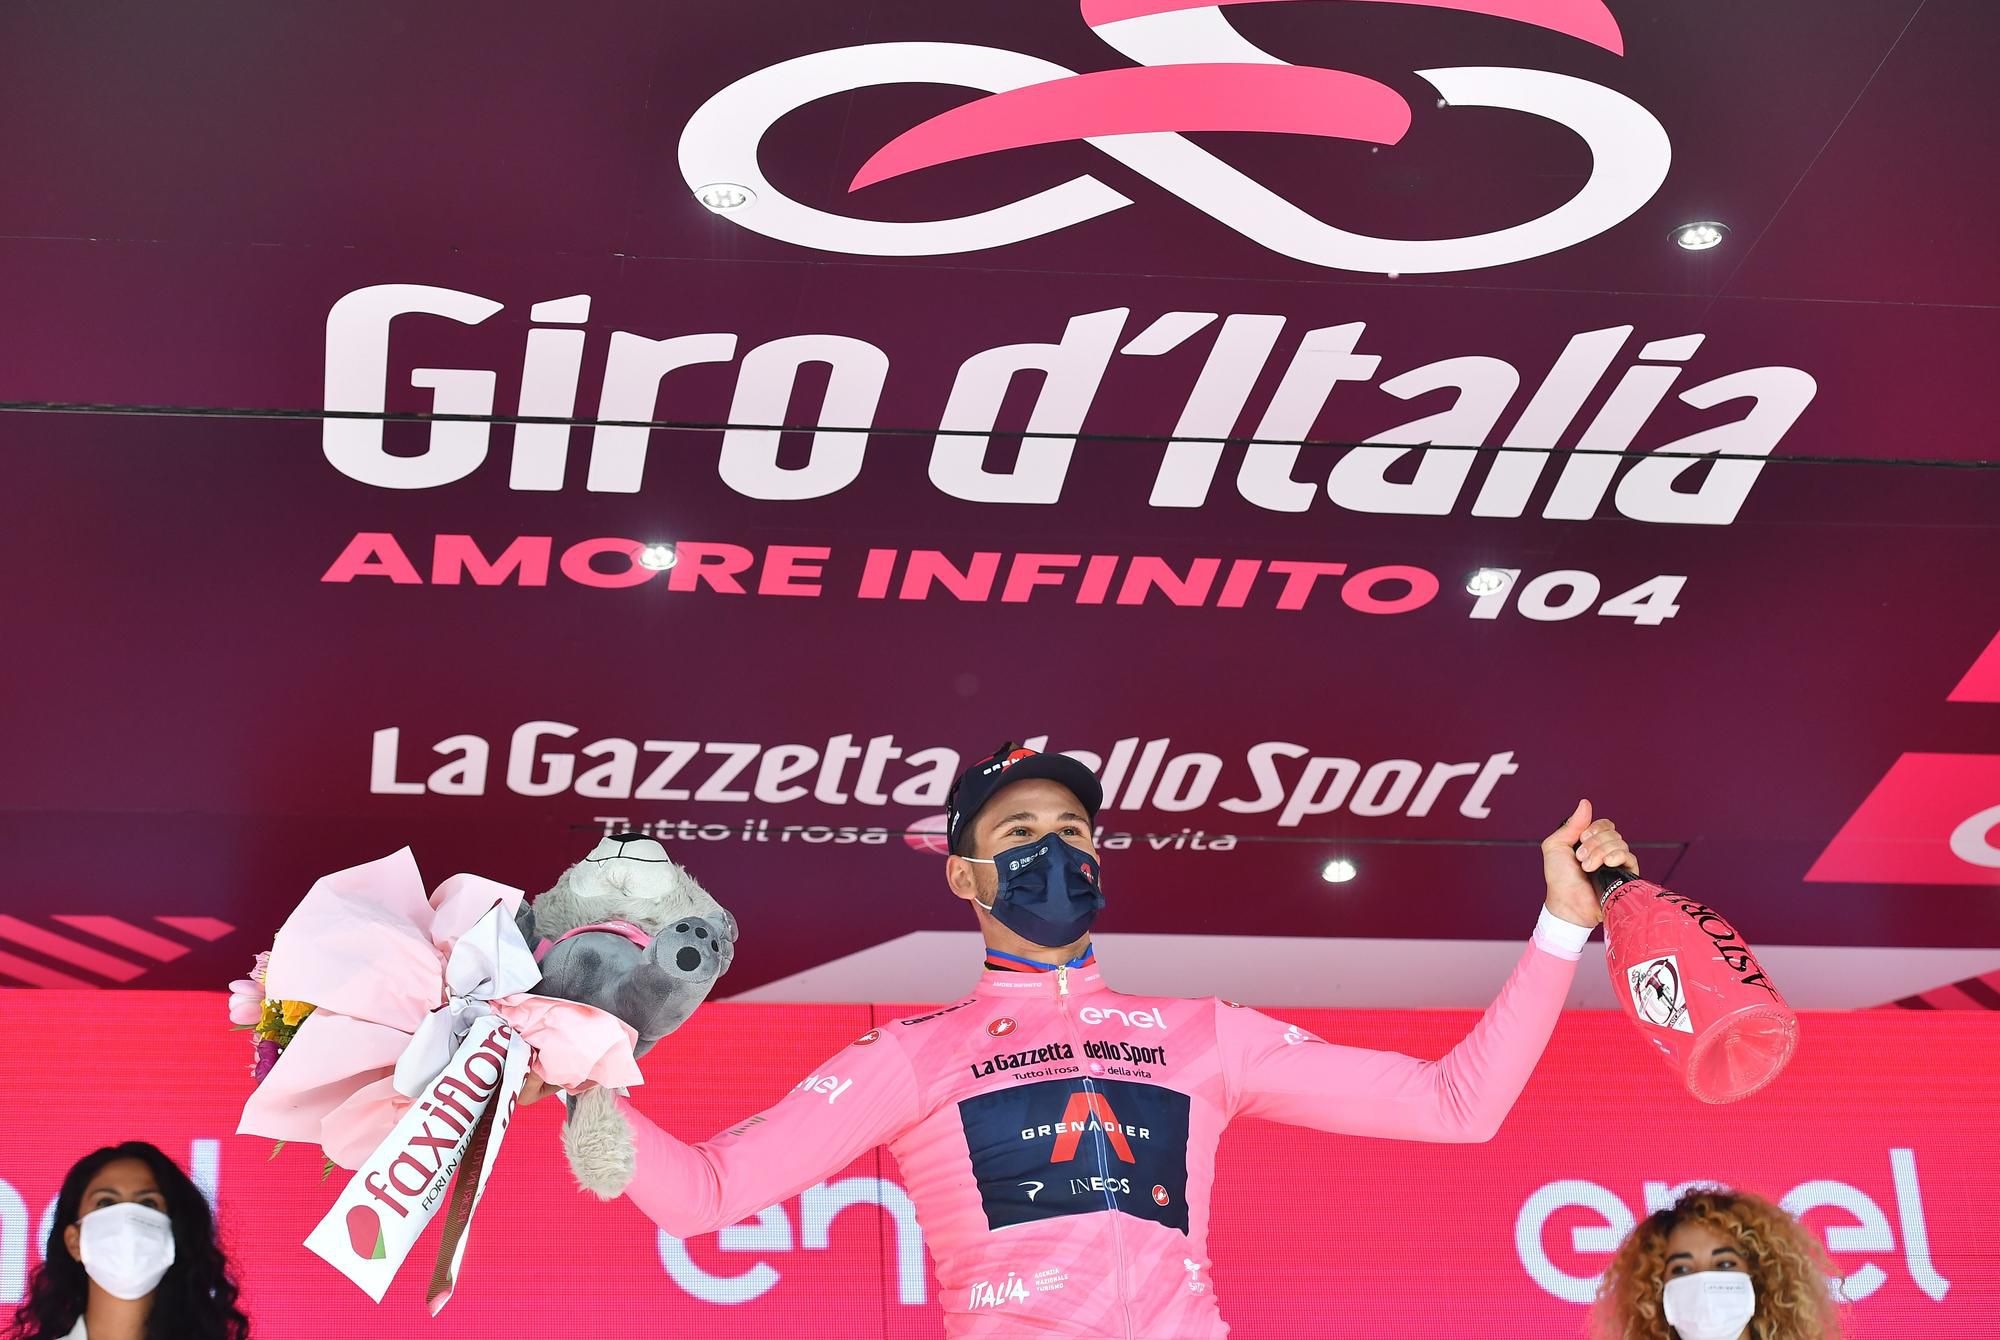 1. etapa Giro d'Italia